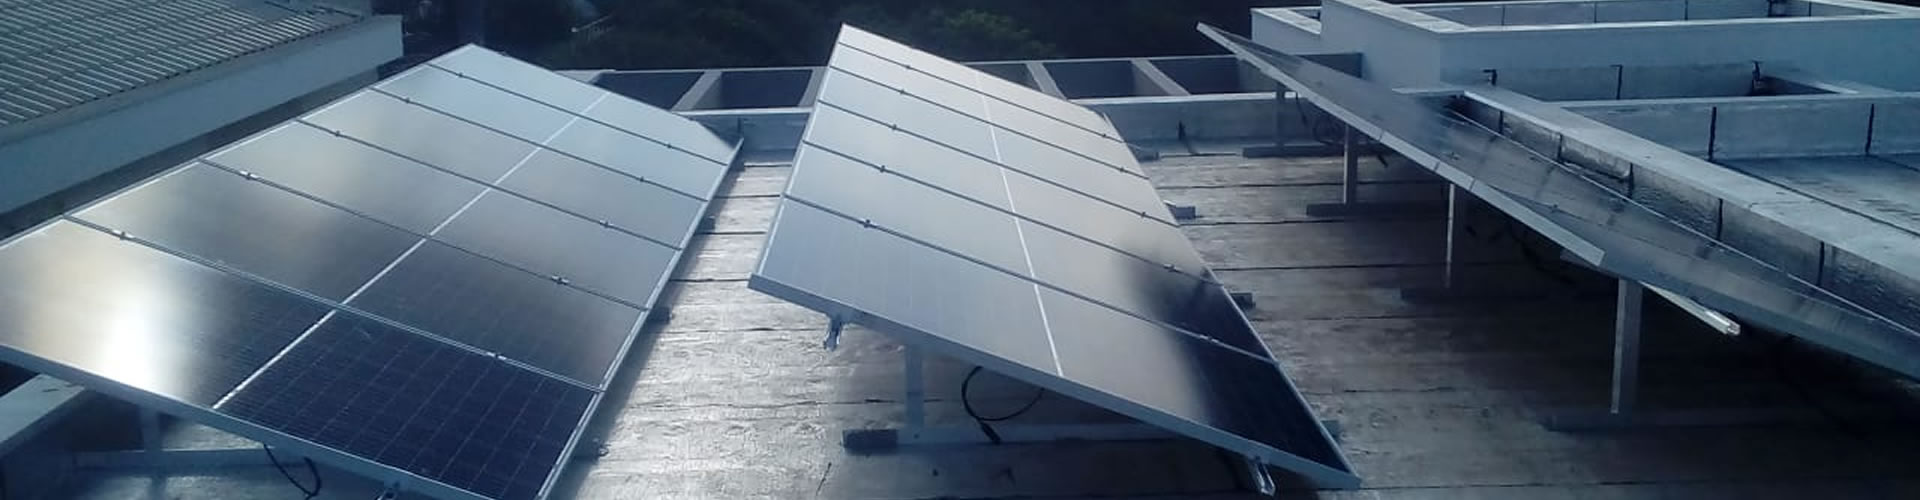 Instalação e Manutenção de Painéis de Energia Solar em Campinas - SP